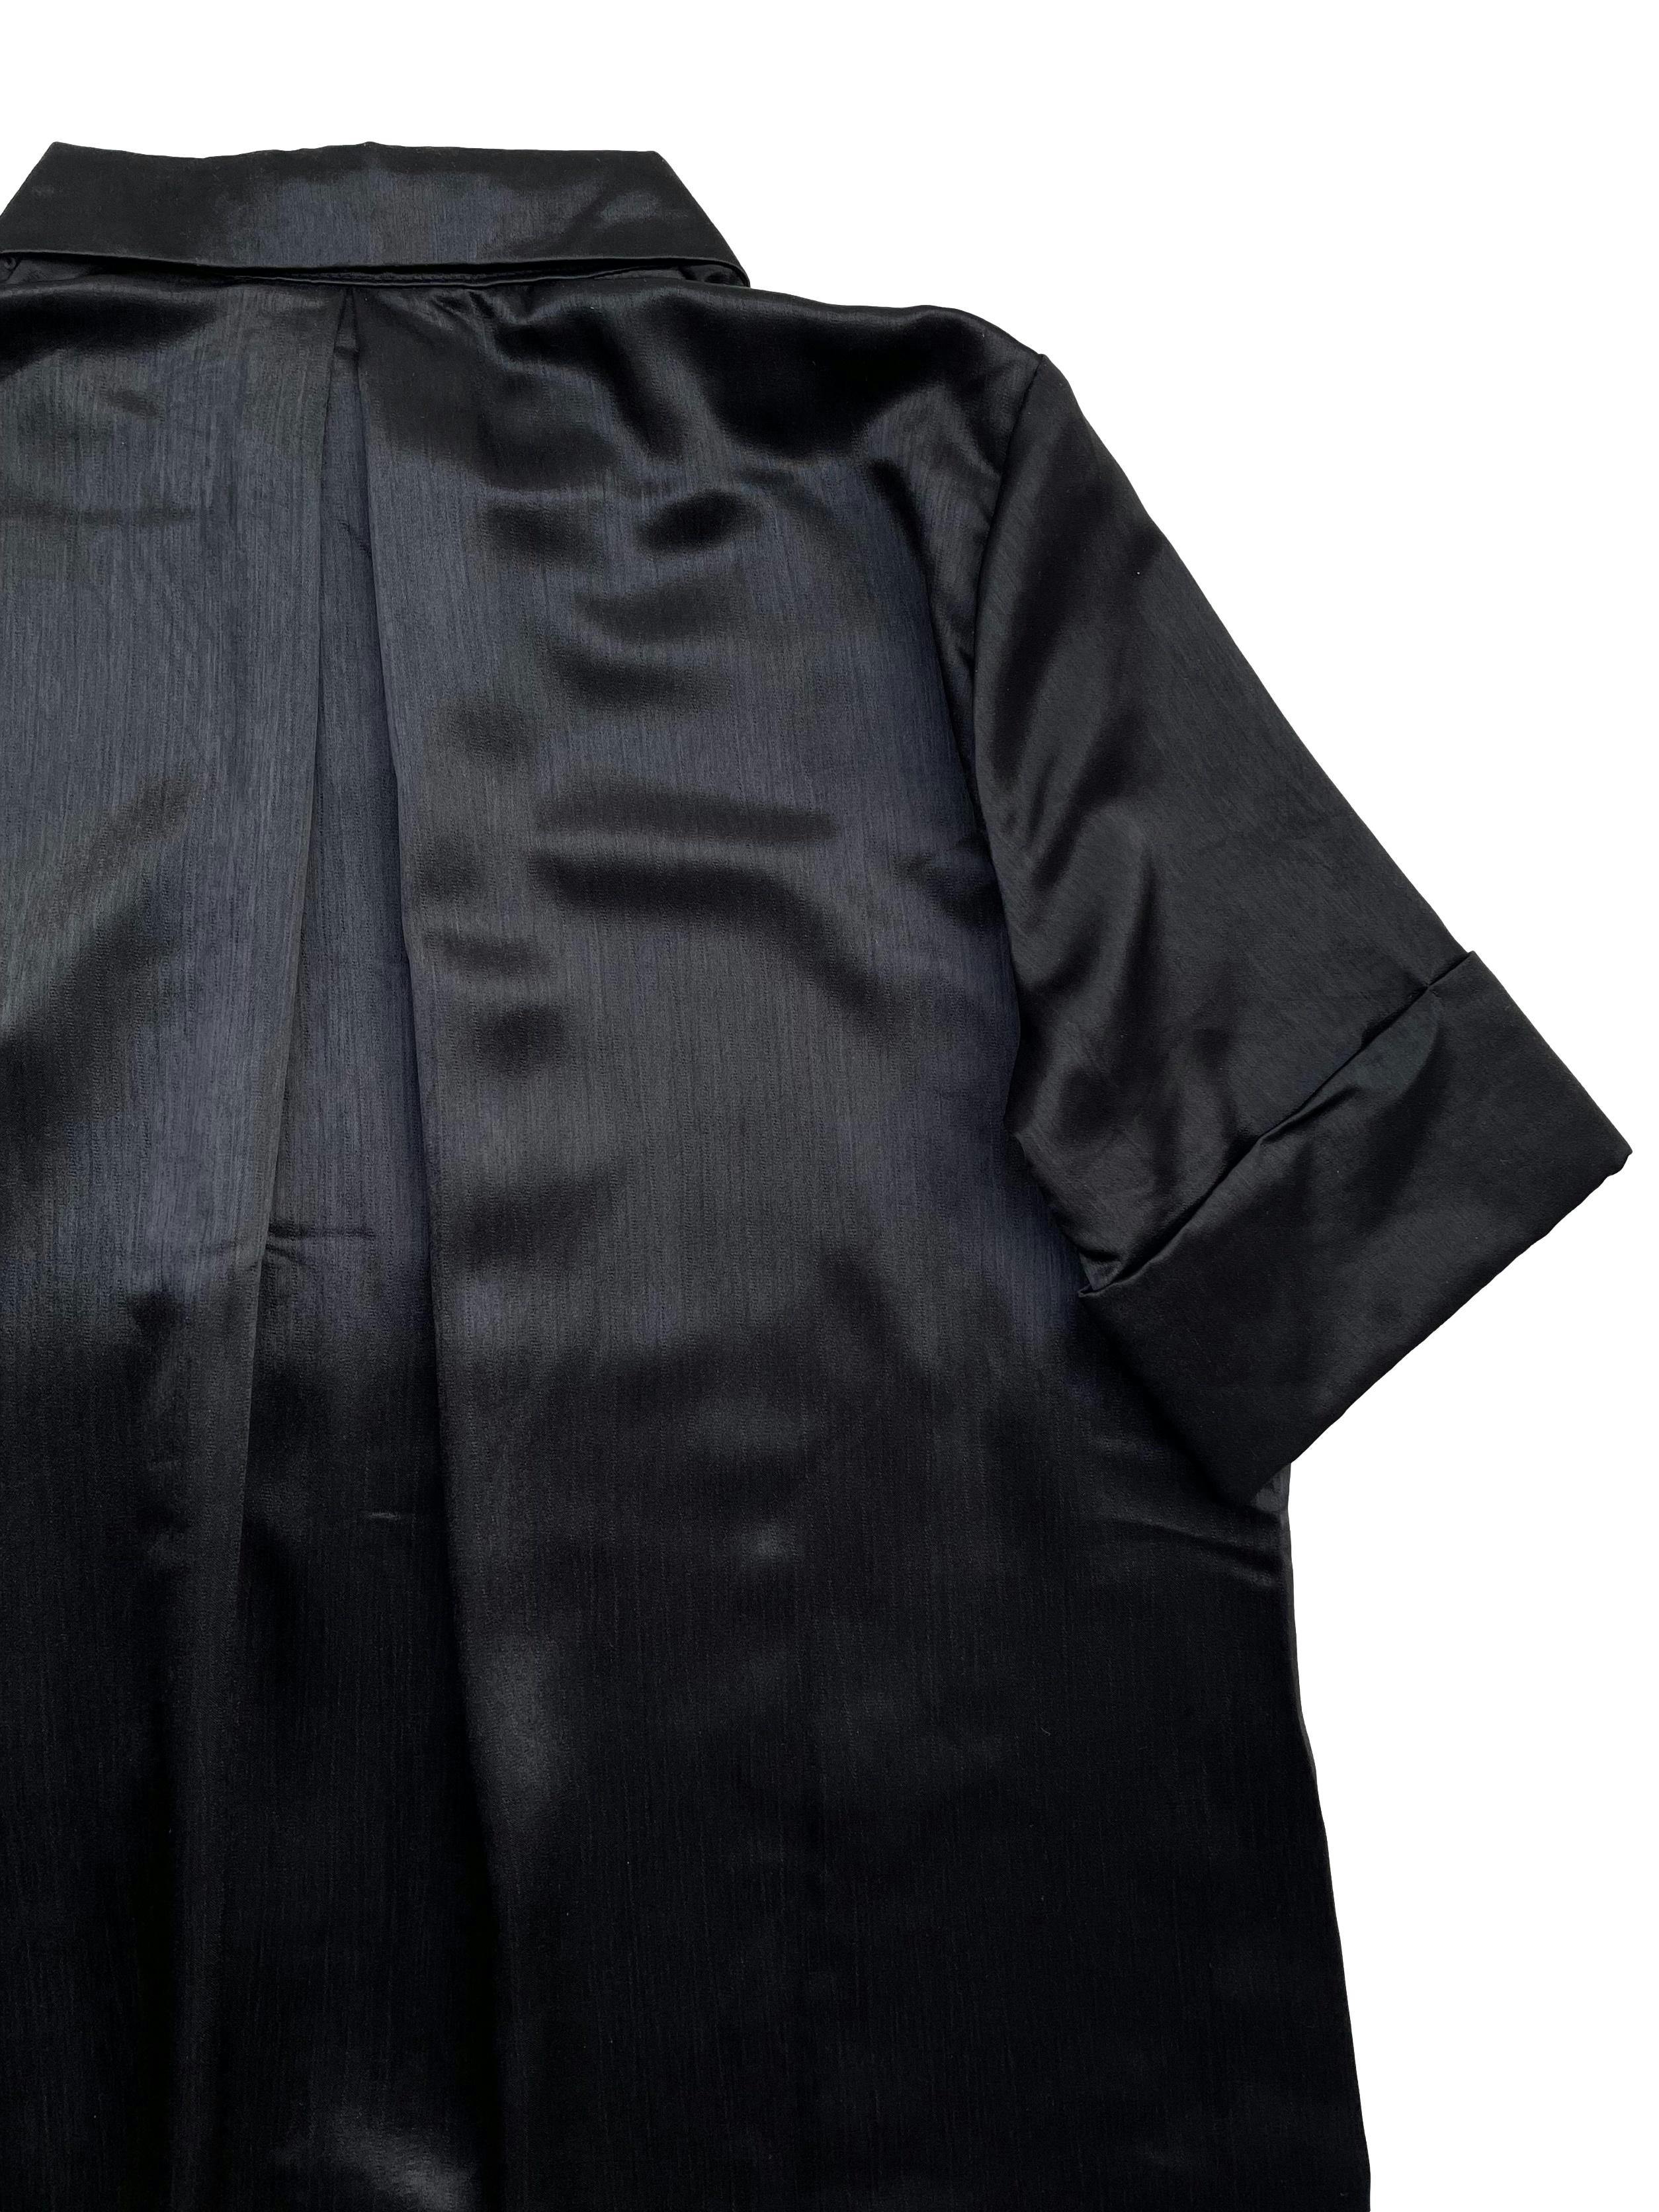 Vestido de tela sedosa negra, dobladillo en mangas, escote con cierre, suelto. Busto: 102cm, Largo: 108cm.